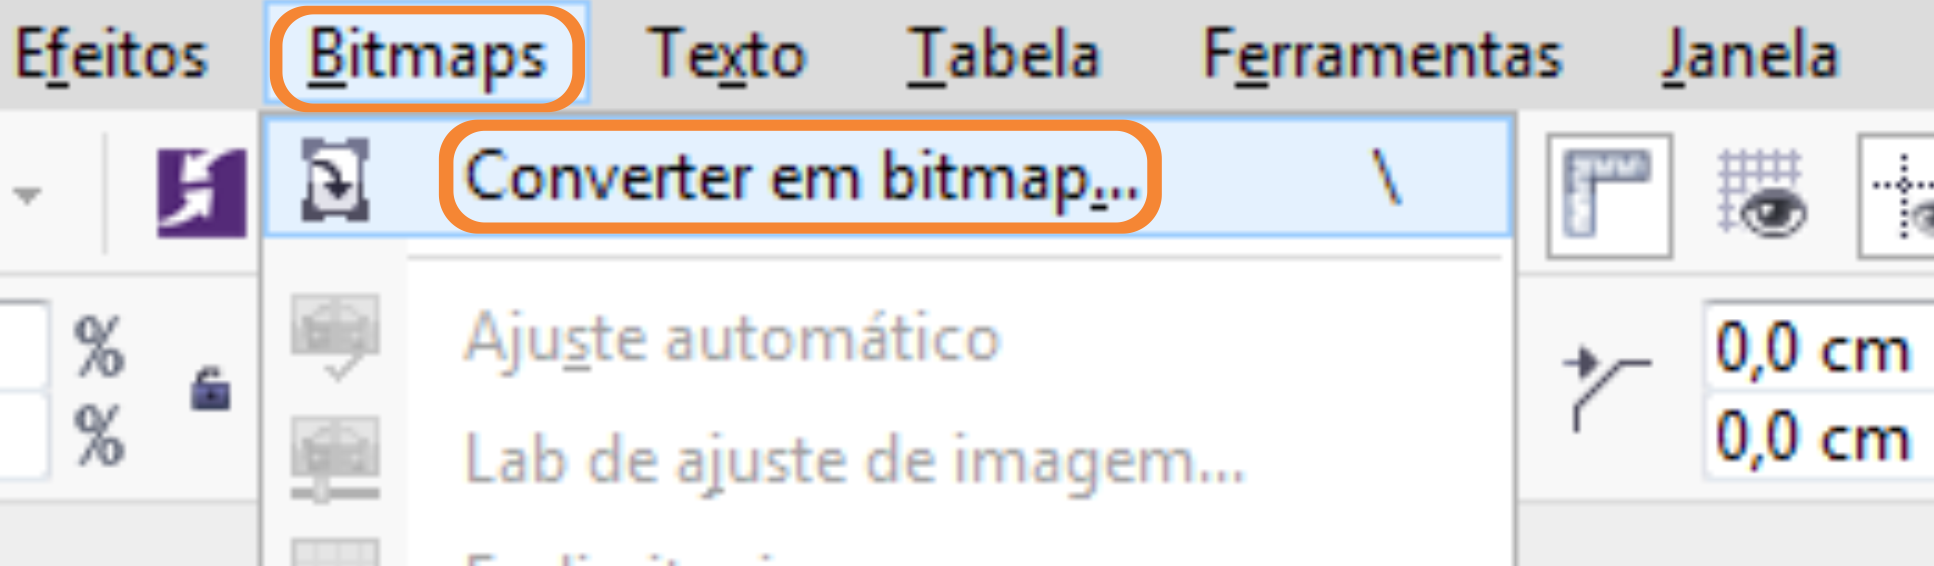 Bitmap